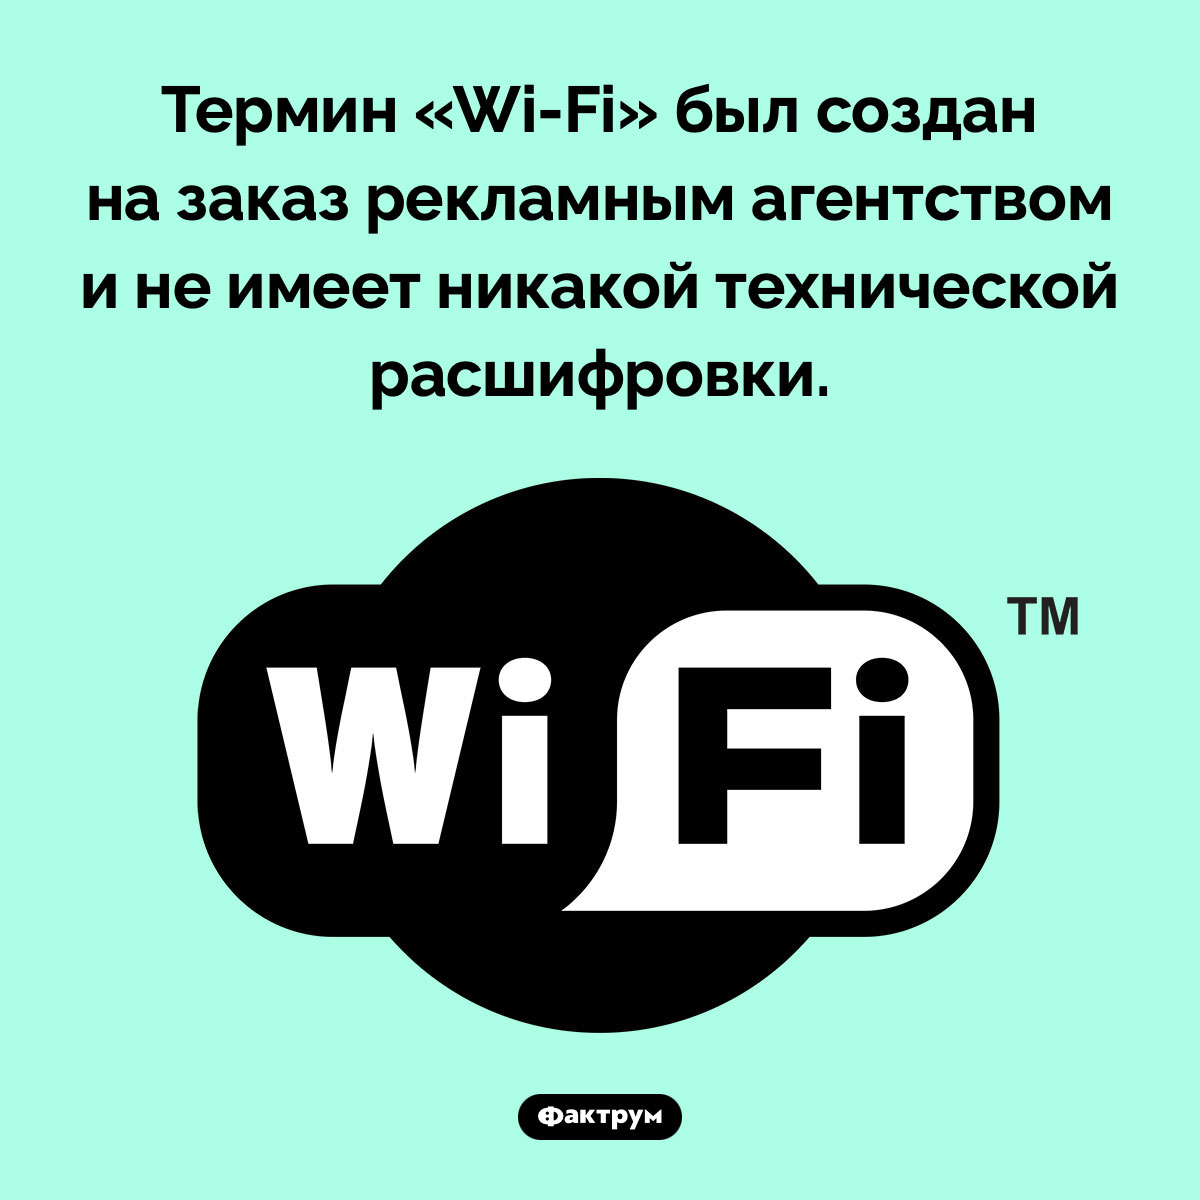 Термин «Wi-Fi» придумали маркетологи. Термин «Wi-Fi» был создан на заказ рекламным агентством и не имеет никакой технической расшифровки.